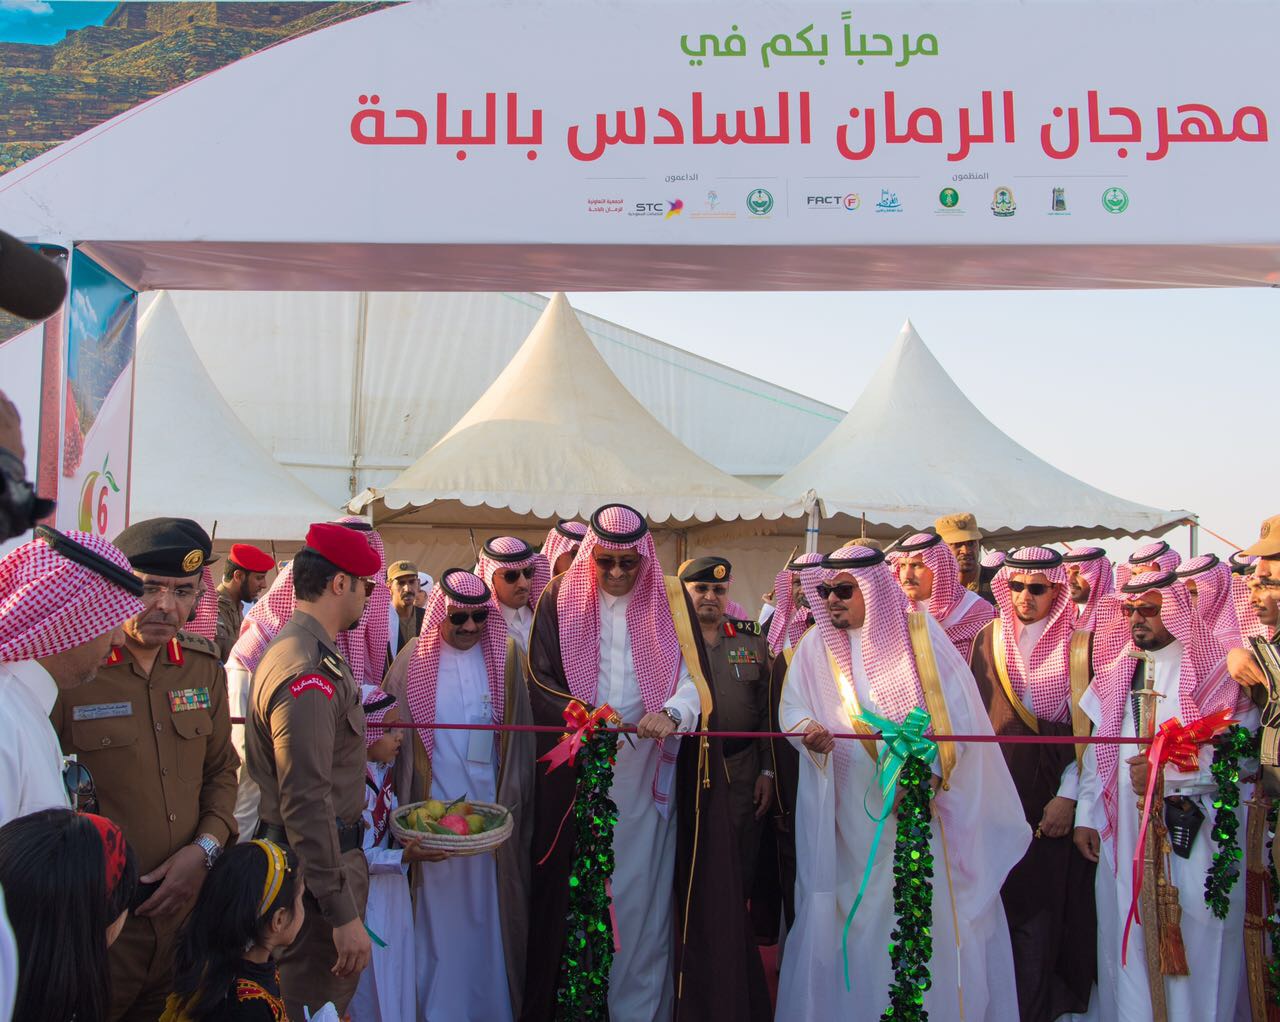 بالصور.. حسام بن سعود يفتتح مهرجان الرمان بمشاركة 238 مزارعًا